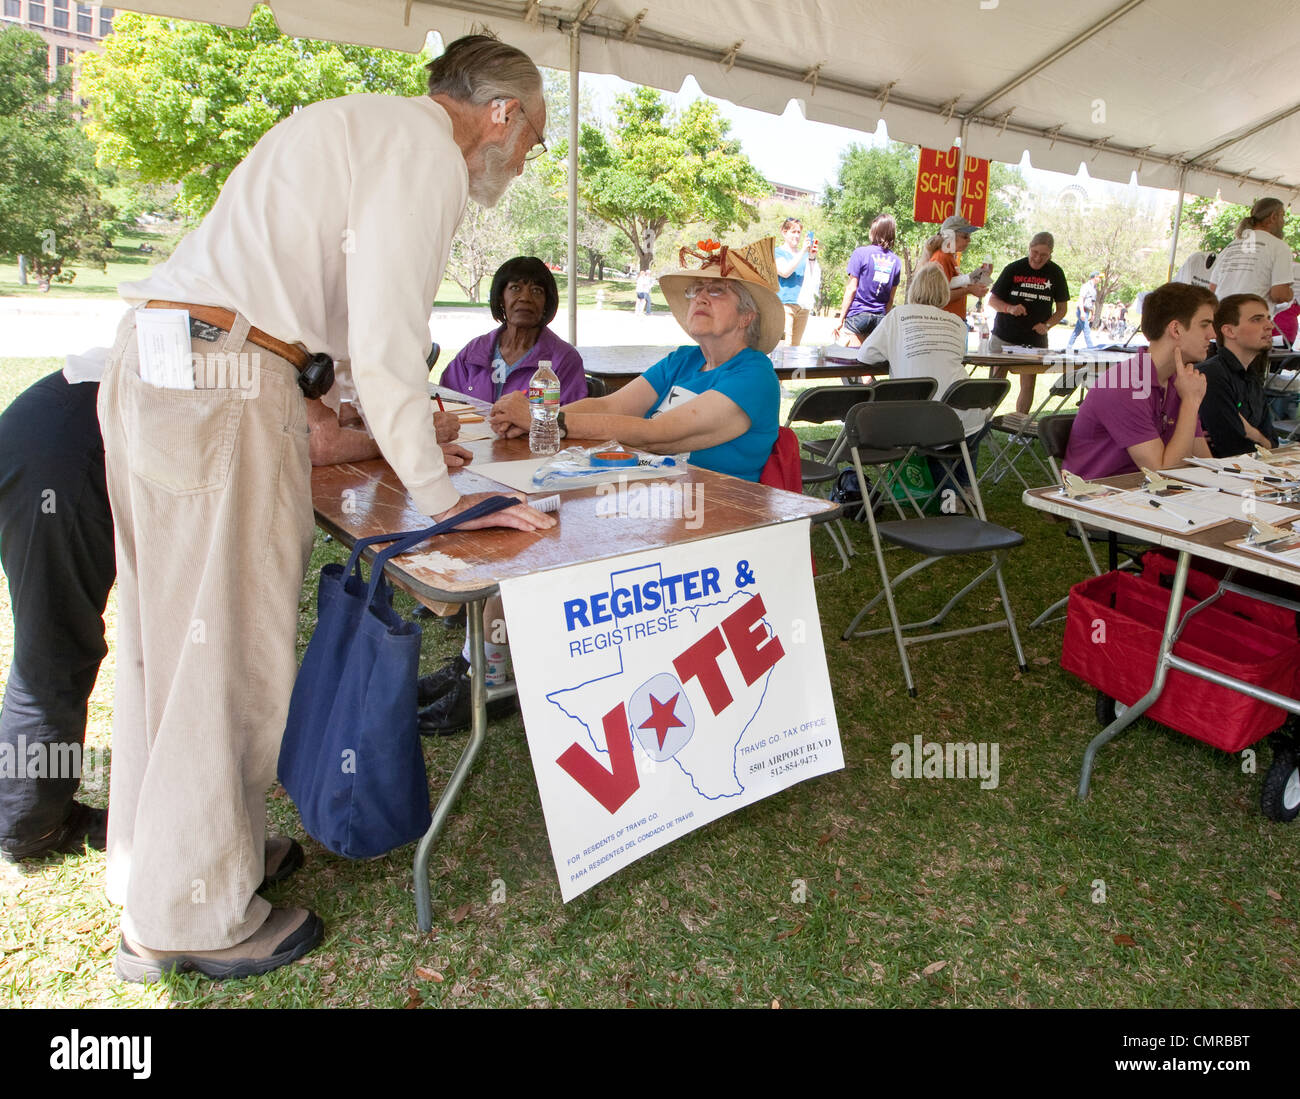 Lavoratore di sesso femminile che tende a una registrazione degli elettori tabella cercando di attirare potenziali elettori per iscriversi compresi i cittadini anziani Foto Stock